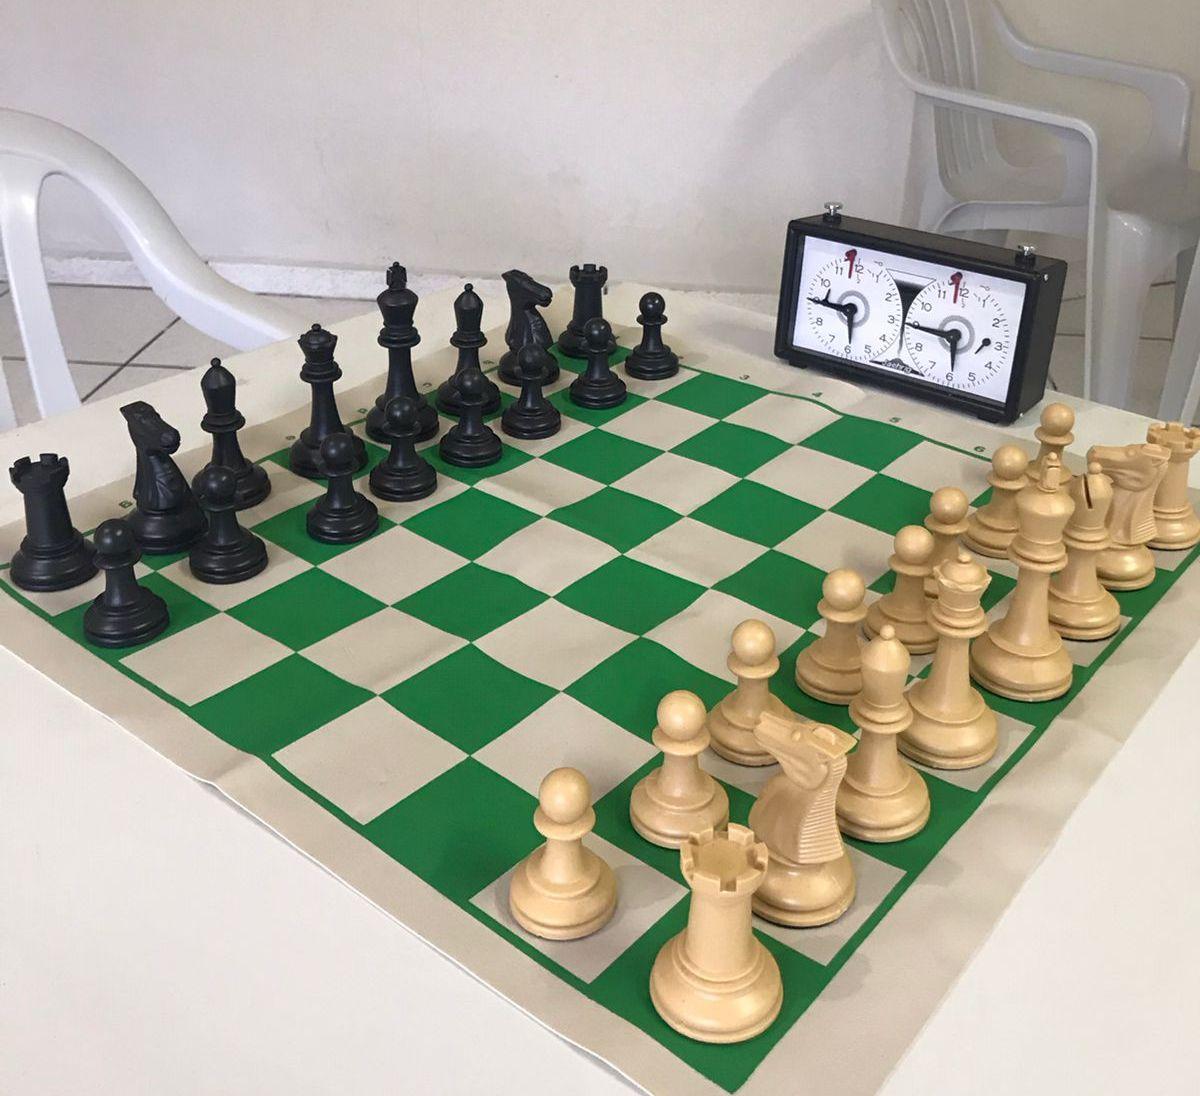 Ituporanga passa a oferecer aulas gratuitas de xadrez a partir da próxima semana